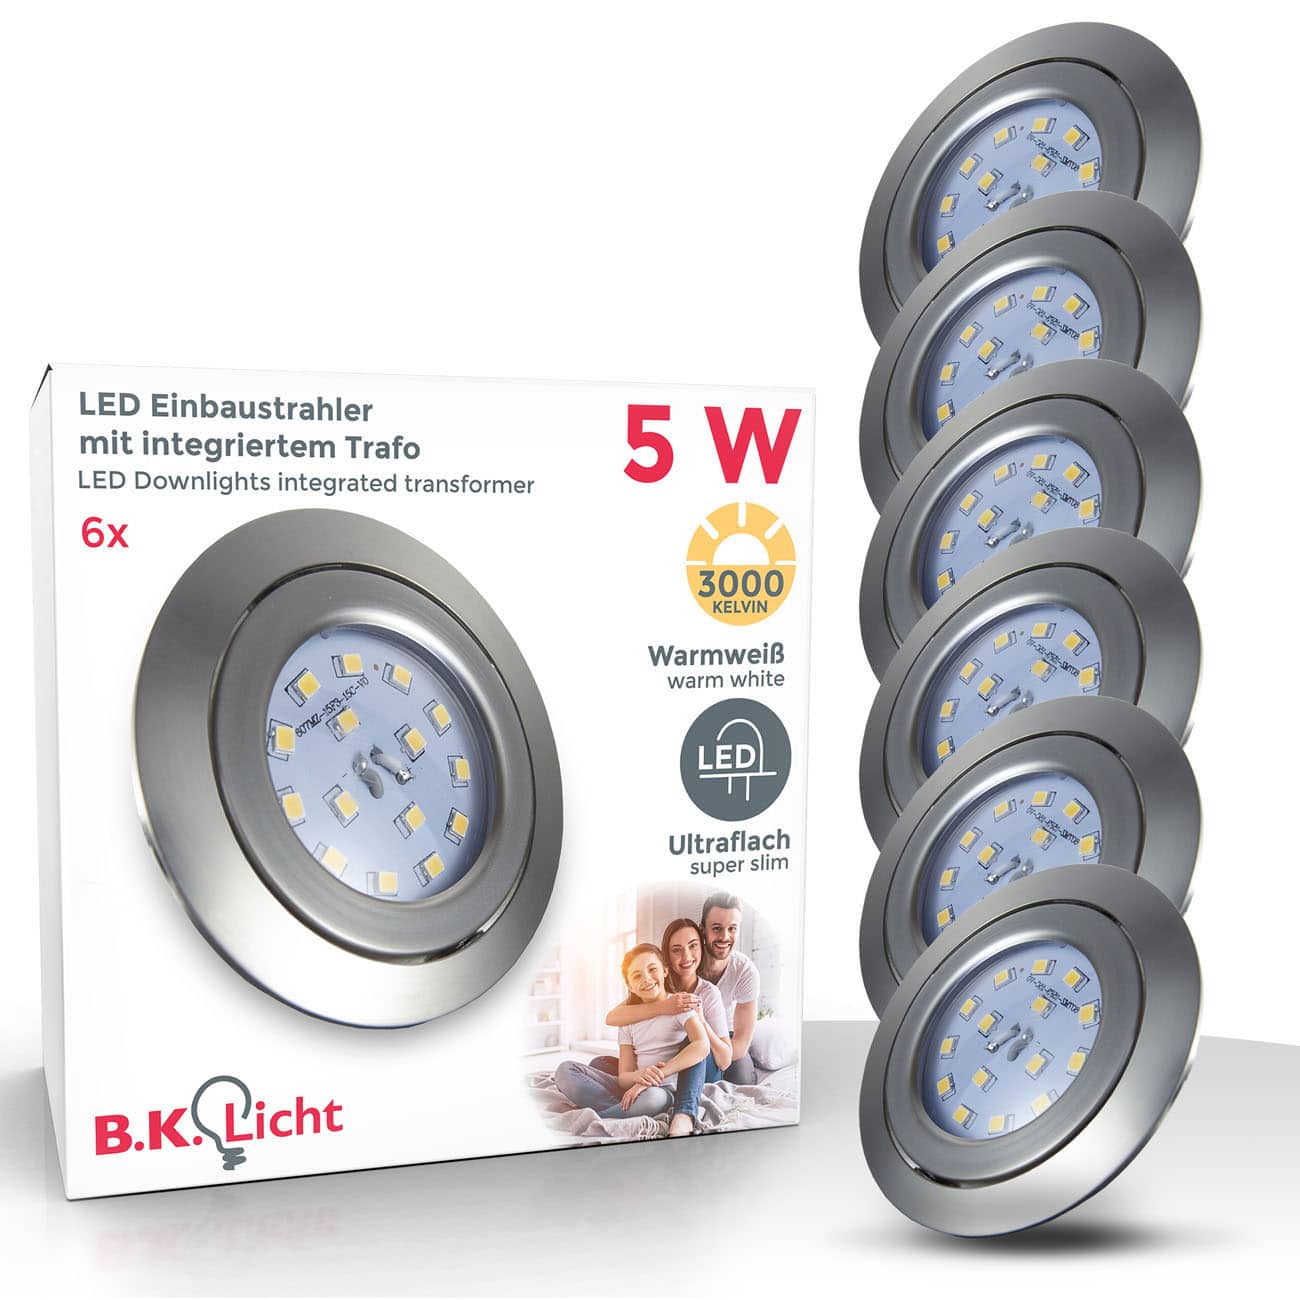 B.K.Licht Onlineshop | kaufen & Leuchten LED Lampen günstig